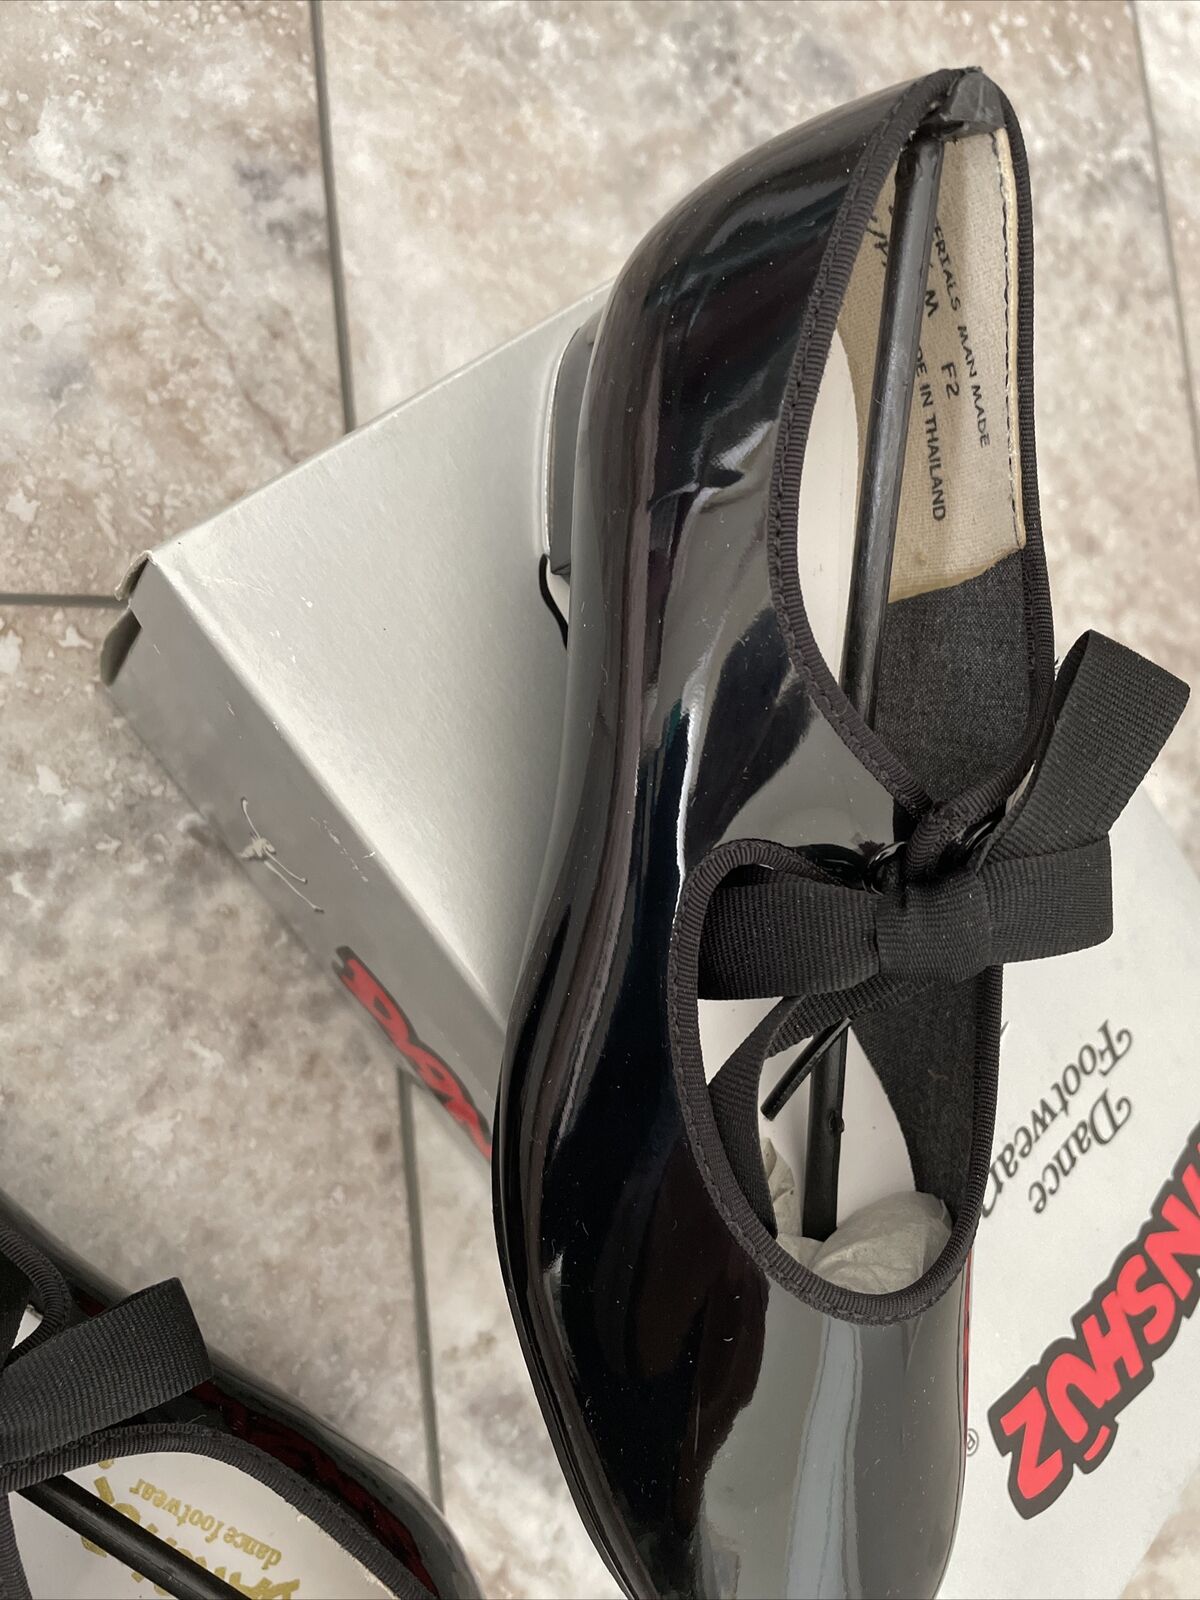 Danshuz Black Patent Leather Lace-Up Tap Shoes-size 2.5 Medium Danshuz - фотография #3